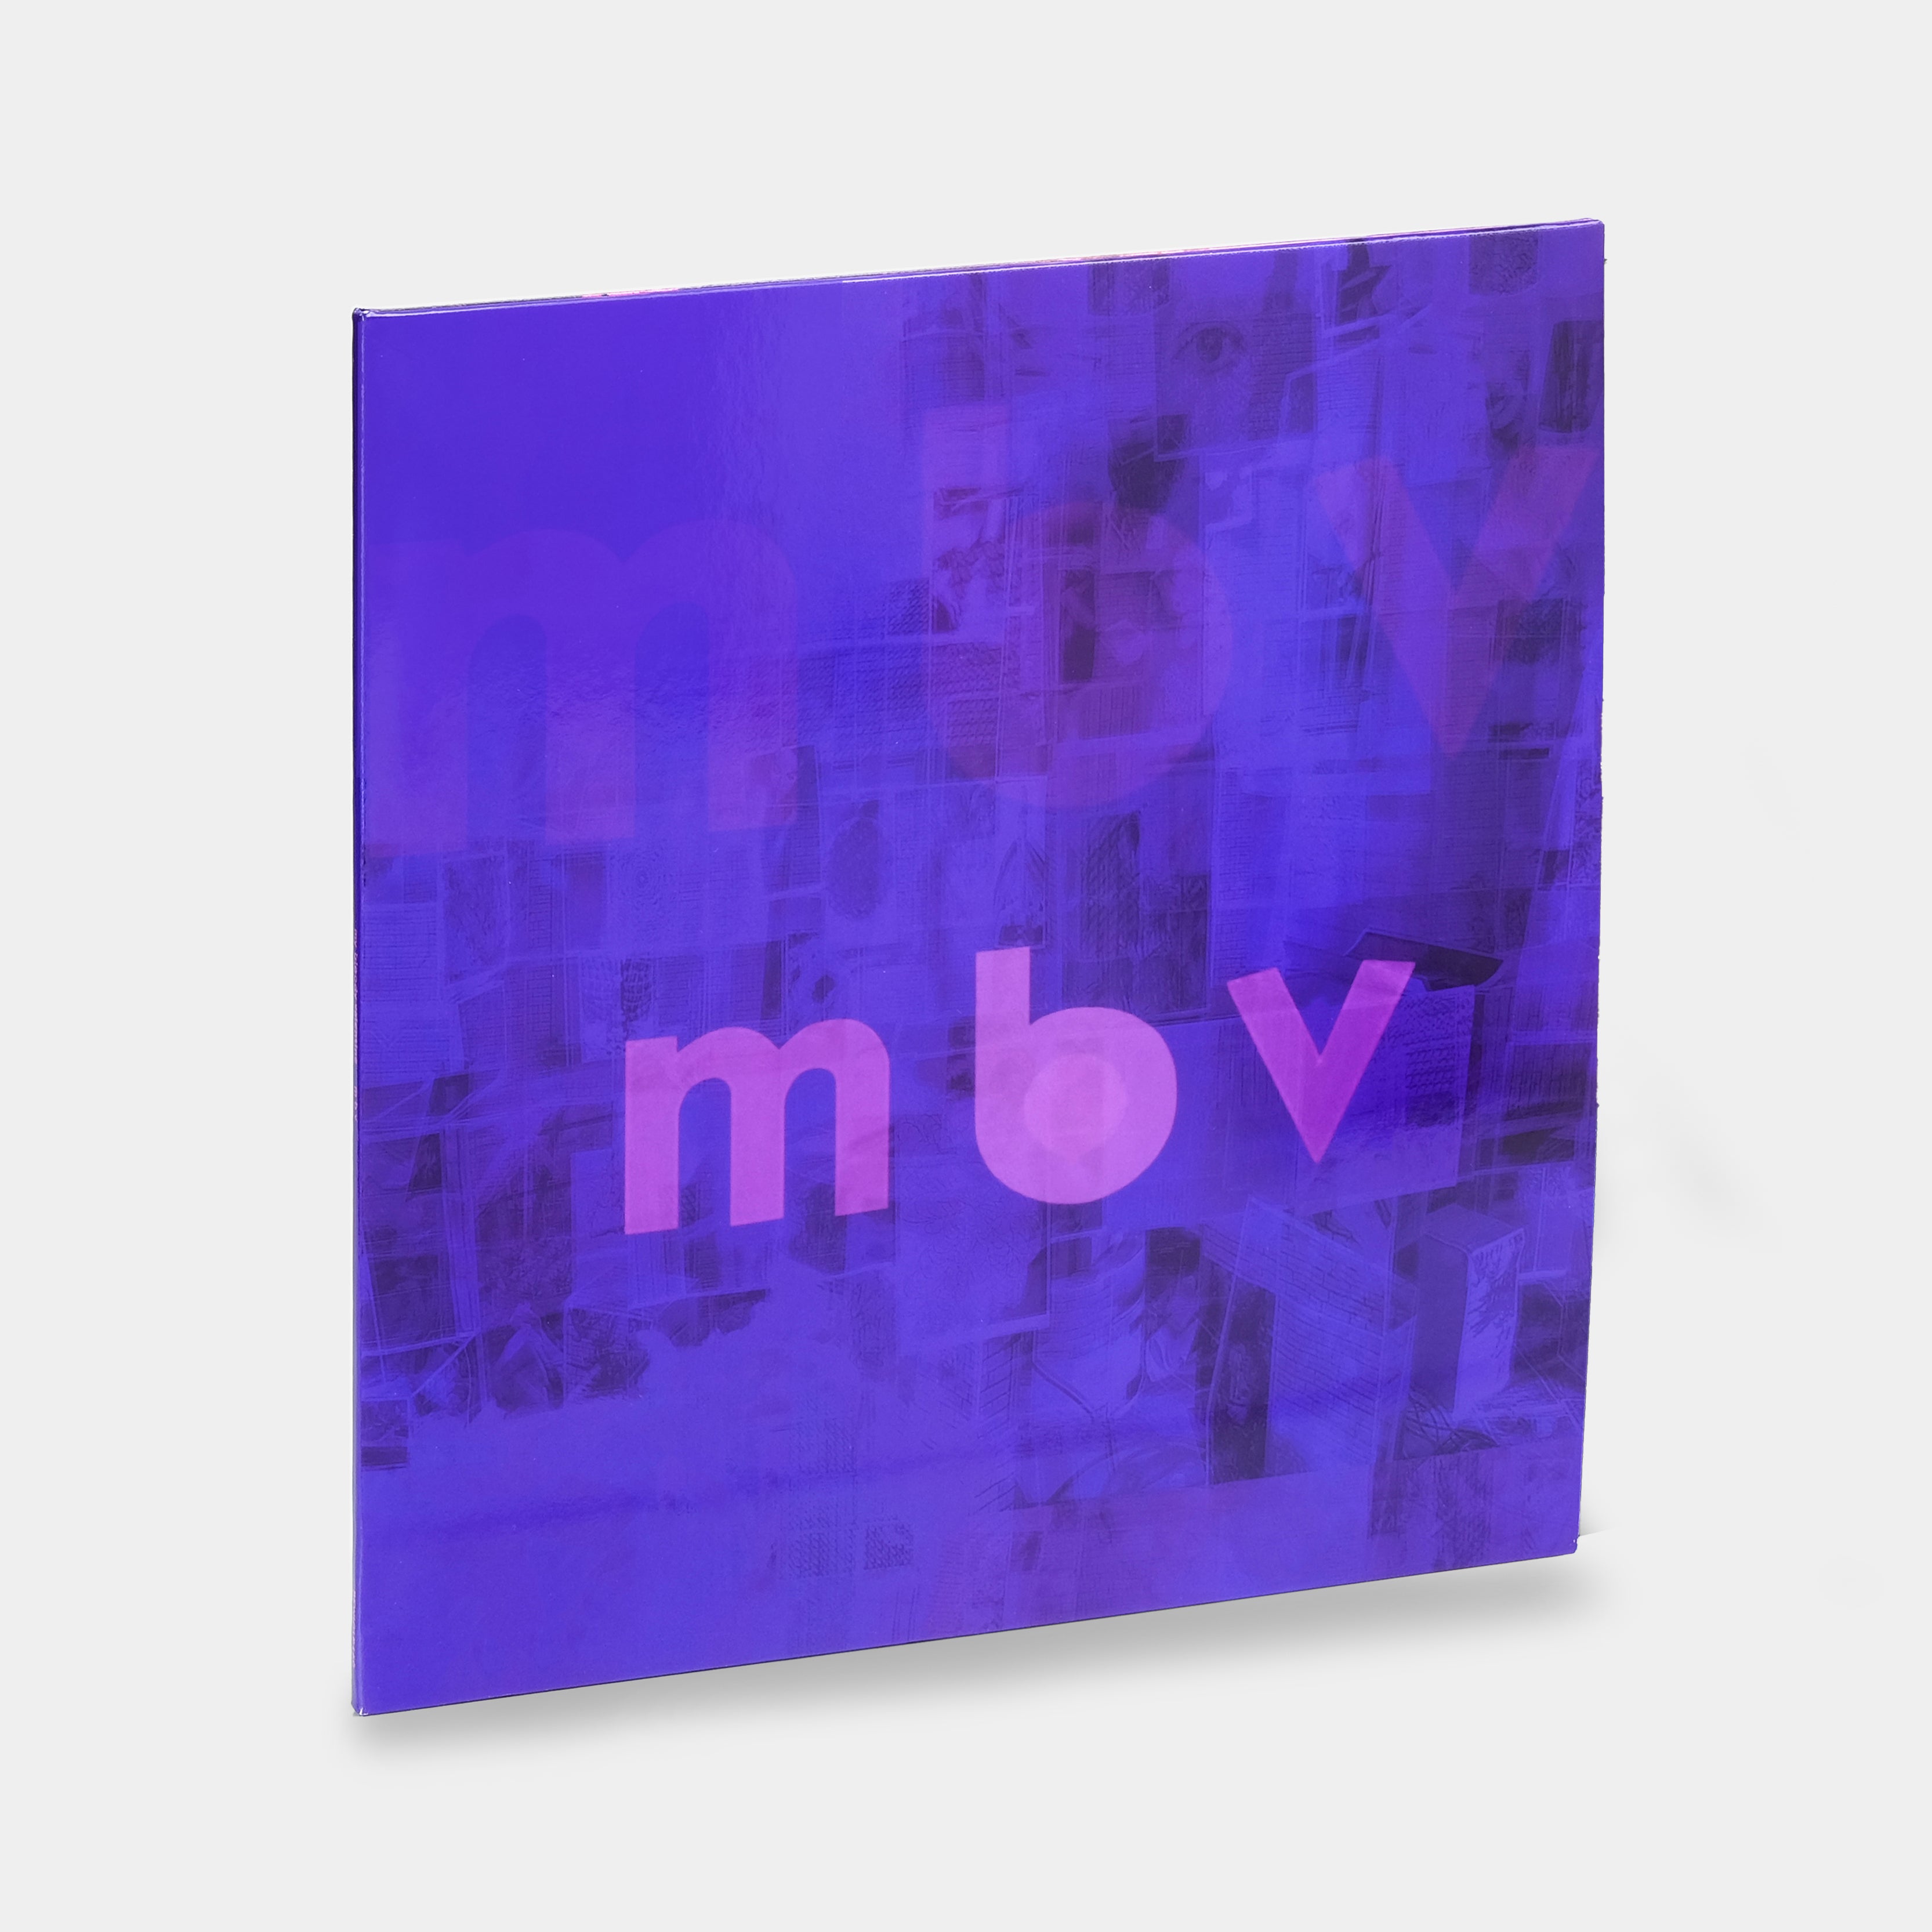 My Bloody Valentine - m b v LP Vinyl Record